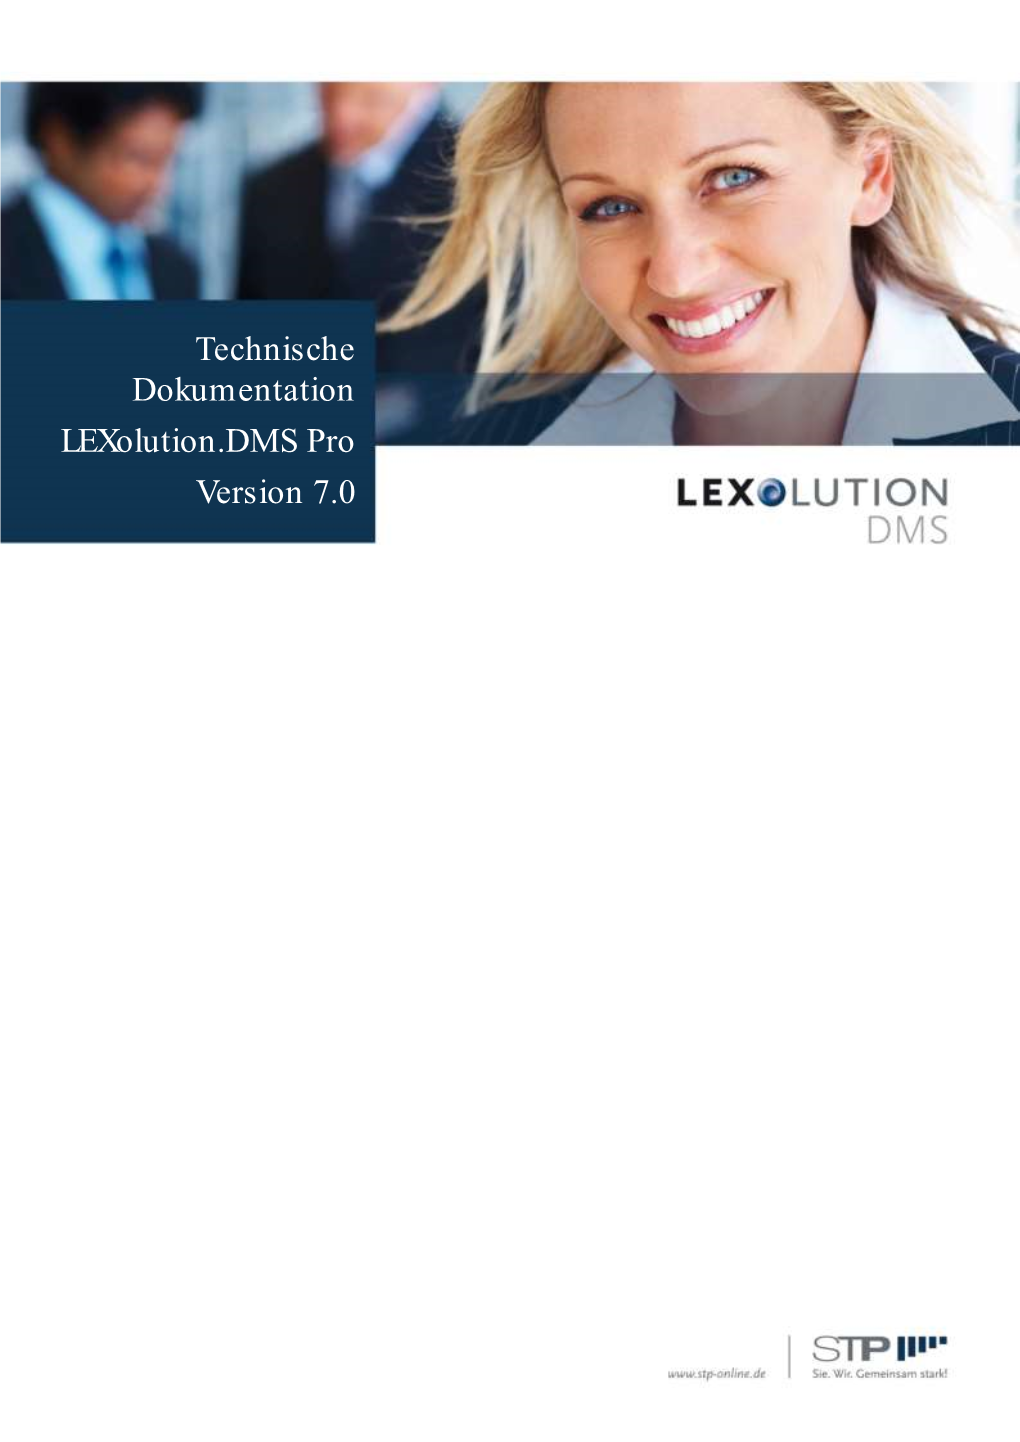 Lexolution.DMS Pro Version 7.0